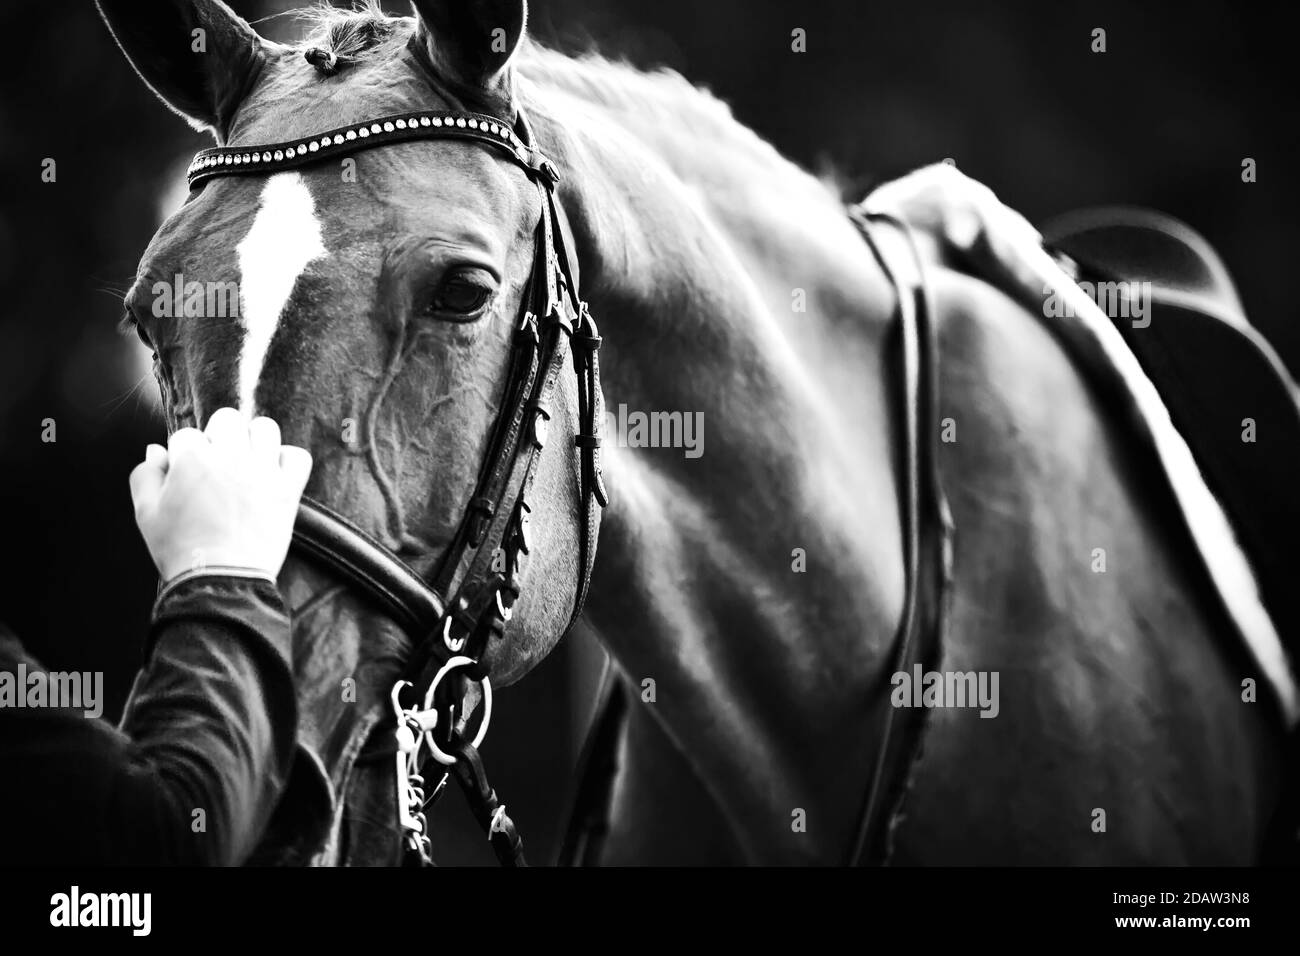 Image en noir et blanc d'un cheval dans un équipement sportif : il porte une selle, une bride et une chicane, et le pilote le tient par la bride. Equestri Banque D'Images